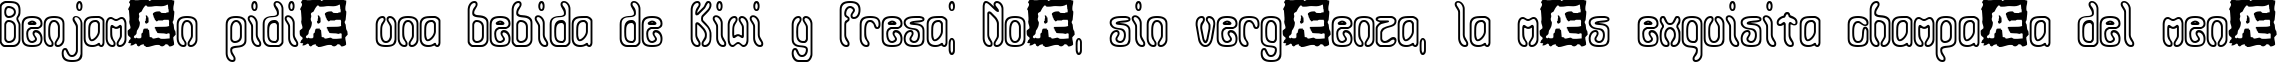 Пример написания шрифтом Queasy Outline BRK текста на испанском